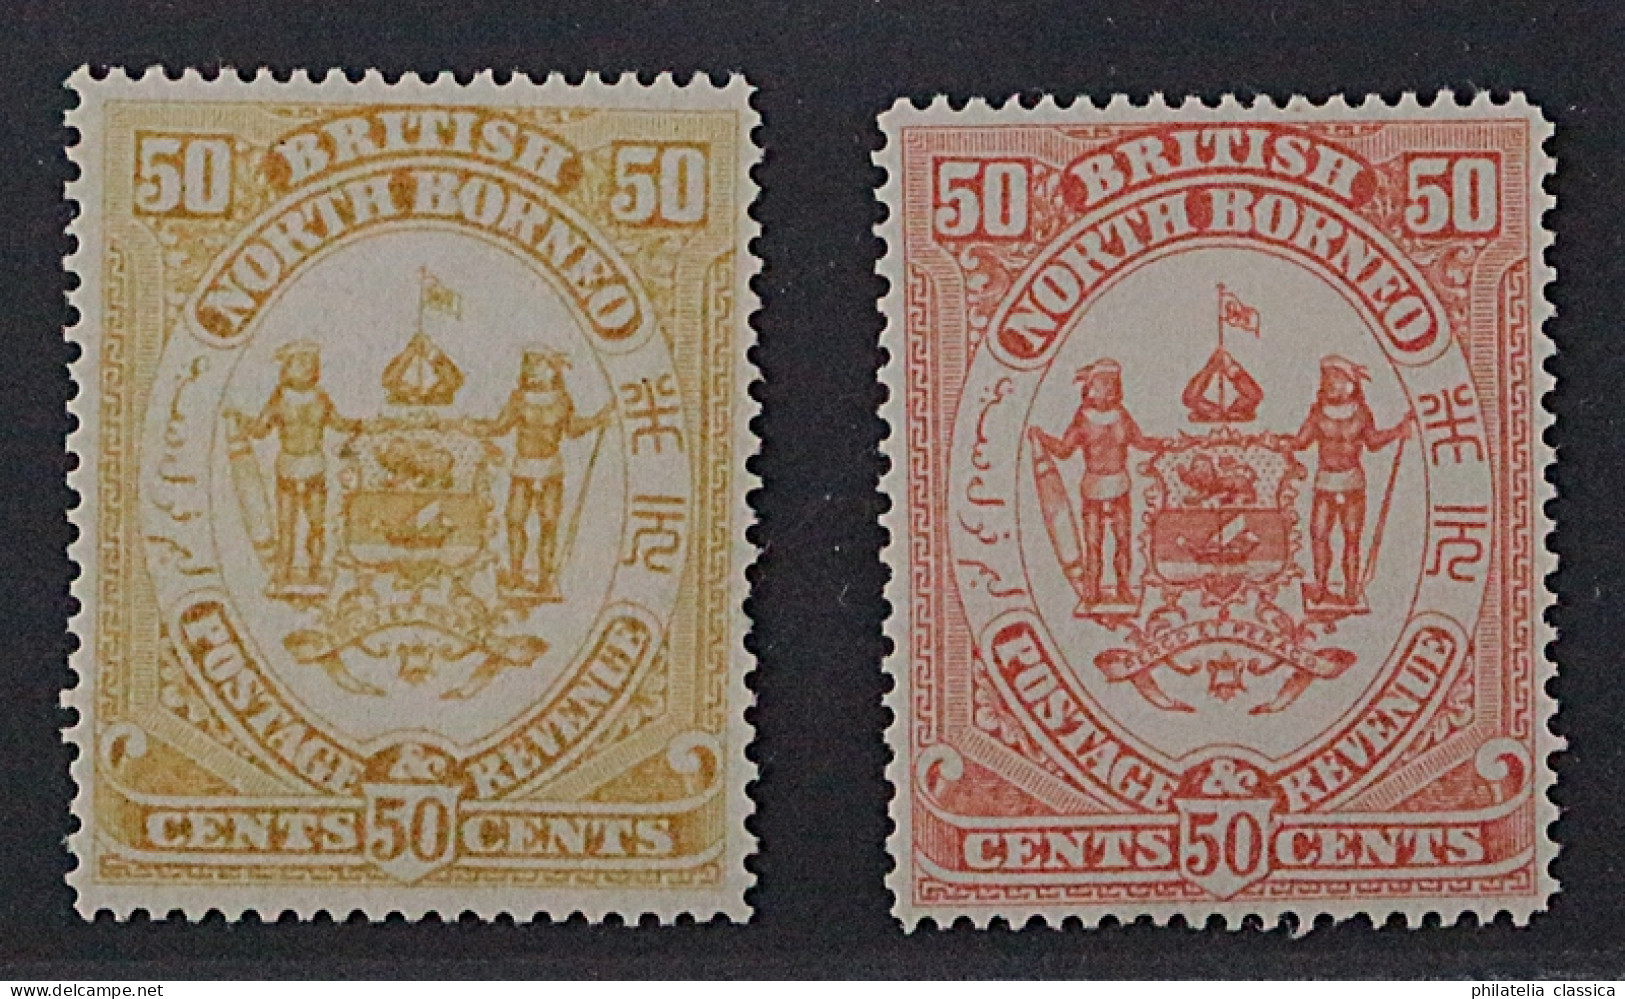 Nordborneo 35 P ** 1888, 50 C. PROBEDRUCK In Gelb+gelborange, Postfrisch, SELTEN - Borneo Del Nord (...-1963)